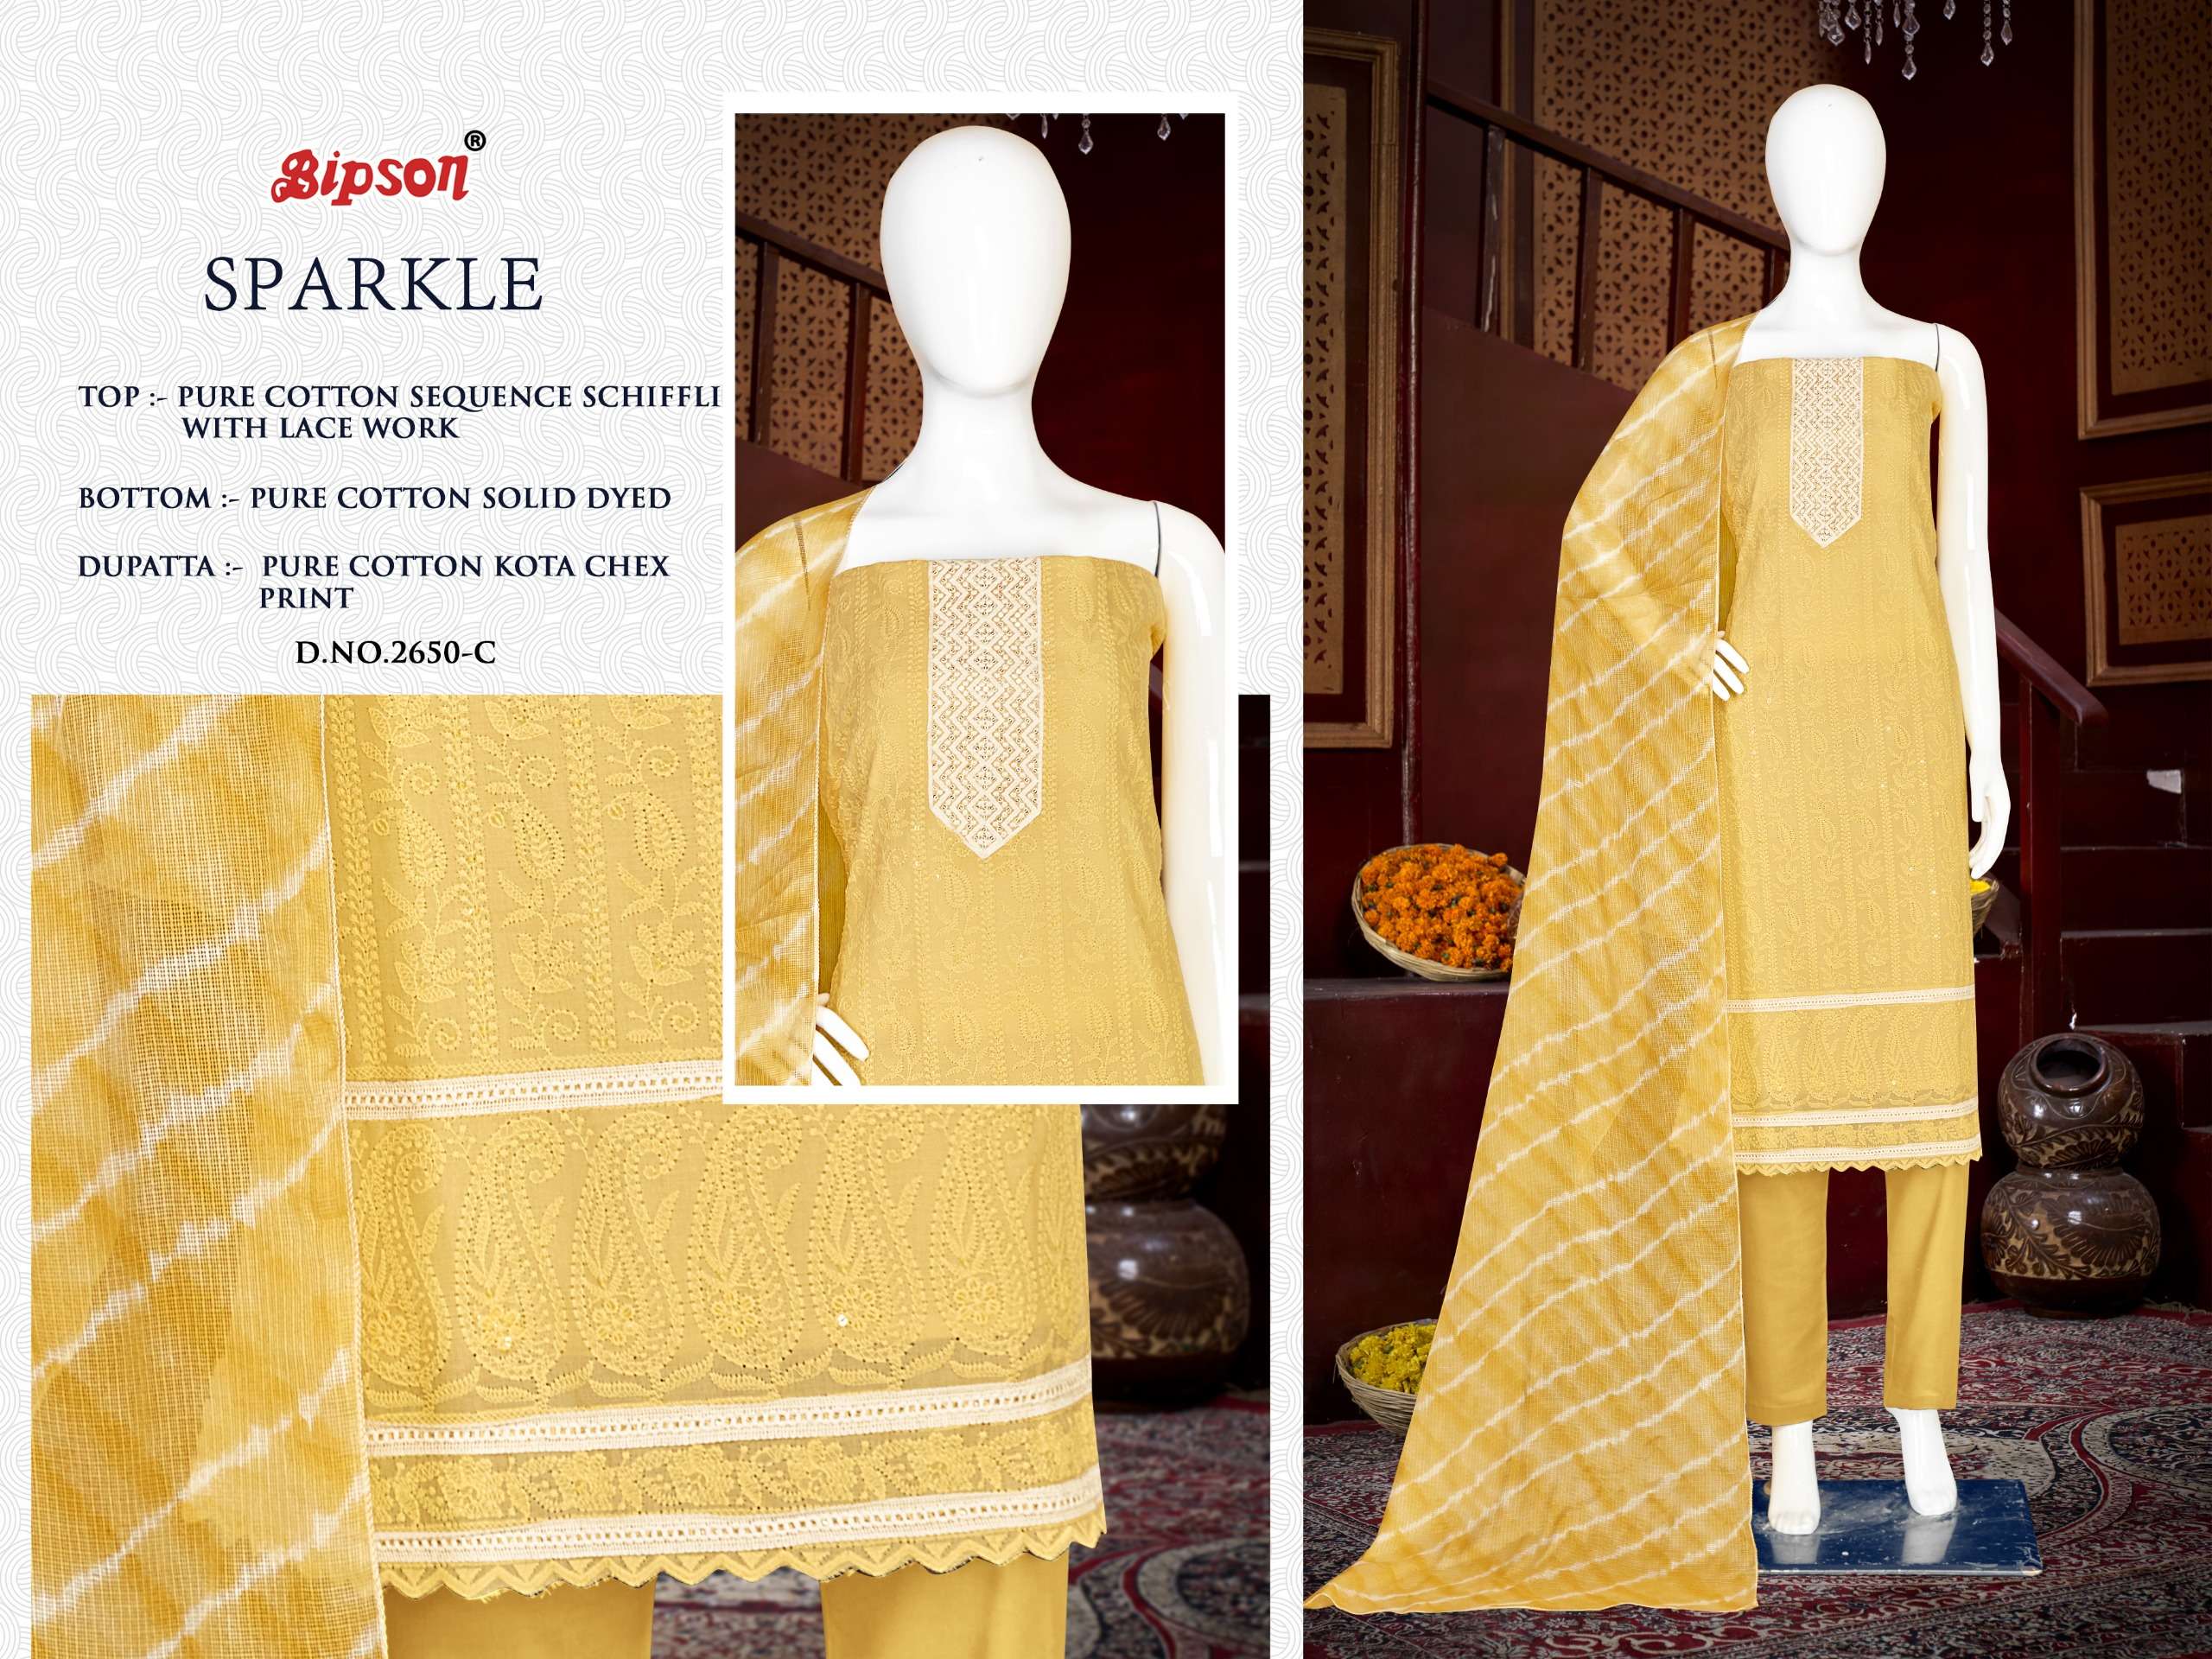 bipson sparkle 2650 cotton attrective print salwar suit catalog